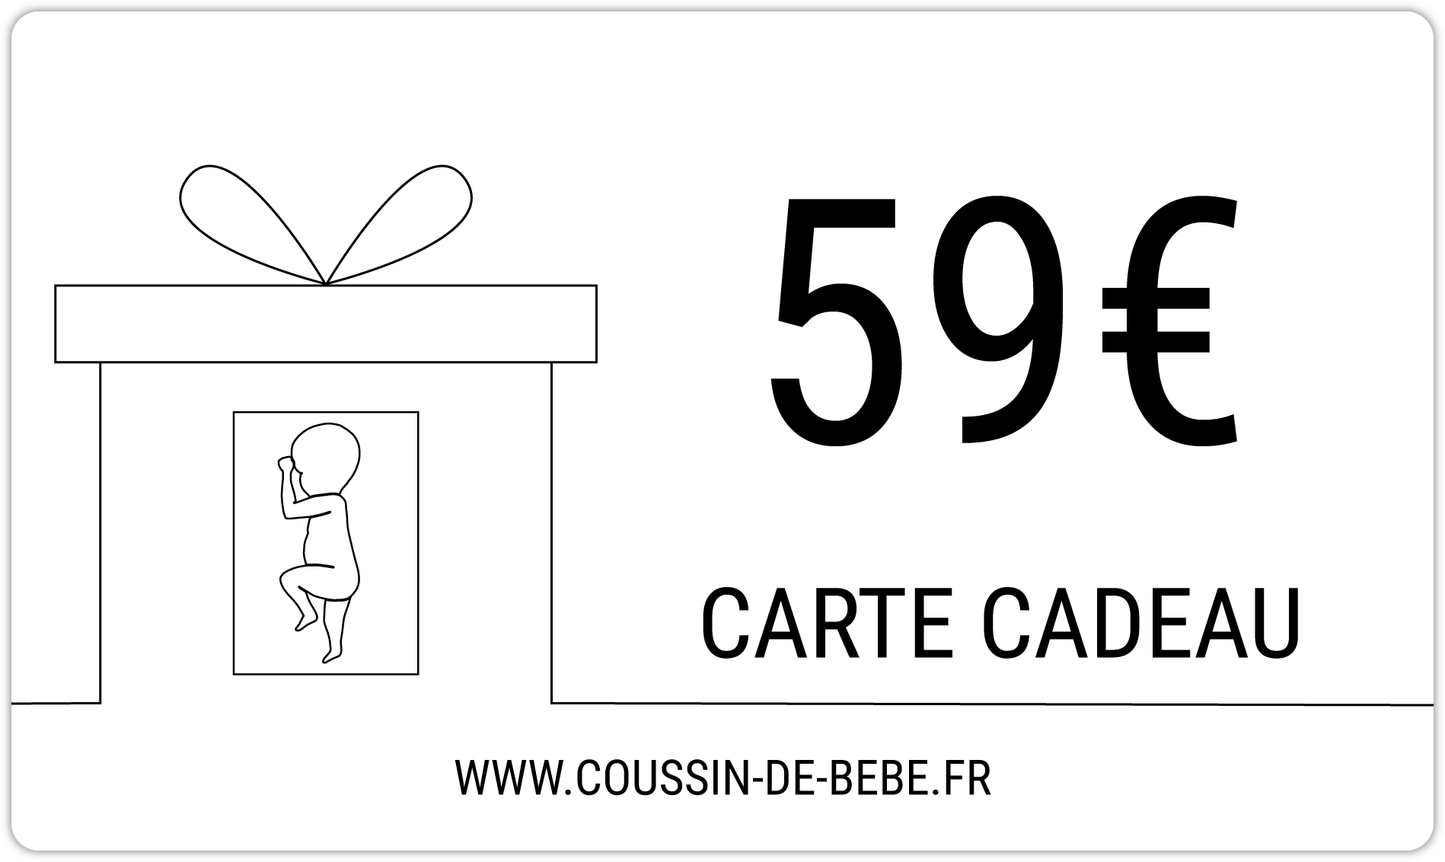 COUSSIN DE BÉBÉ - CARTE CADEAU